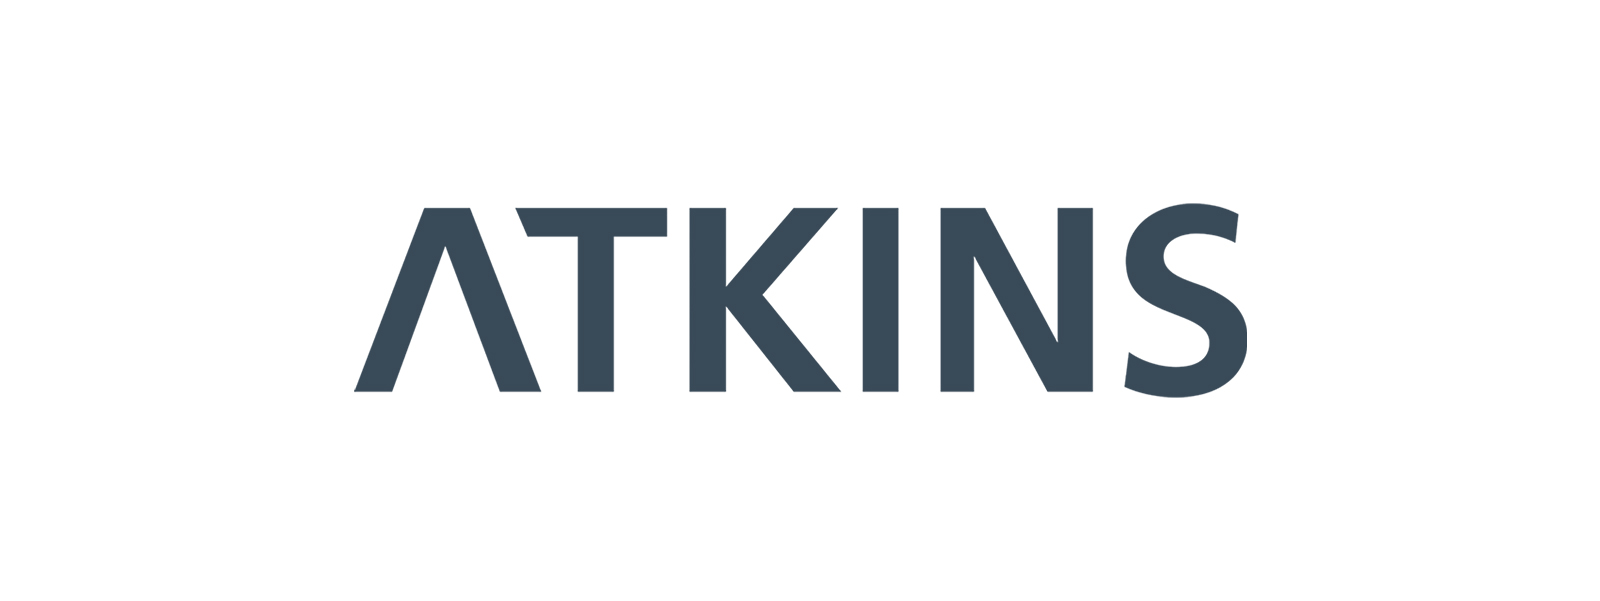 logos-atkins